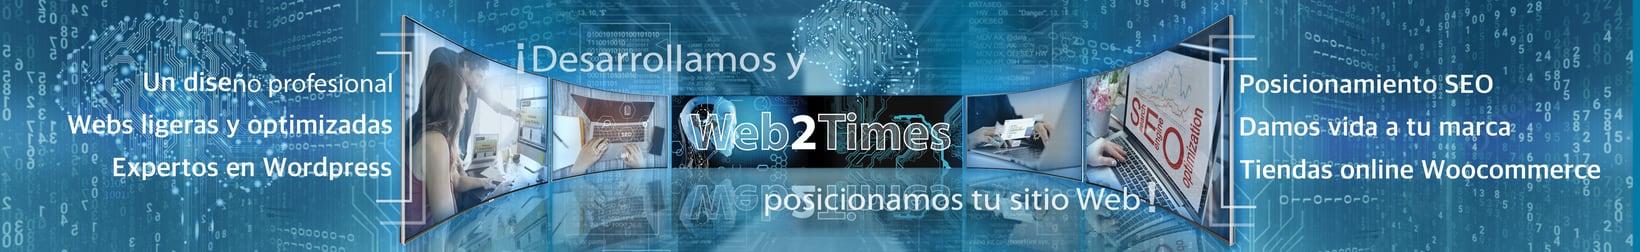 Web2Times - desarrollo Web y SEO